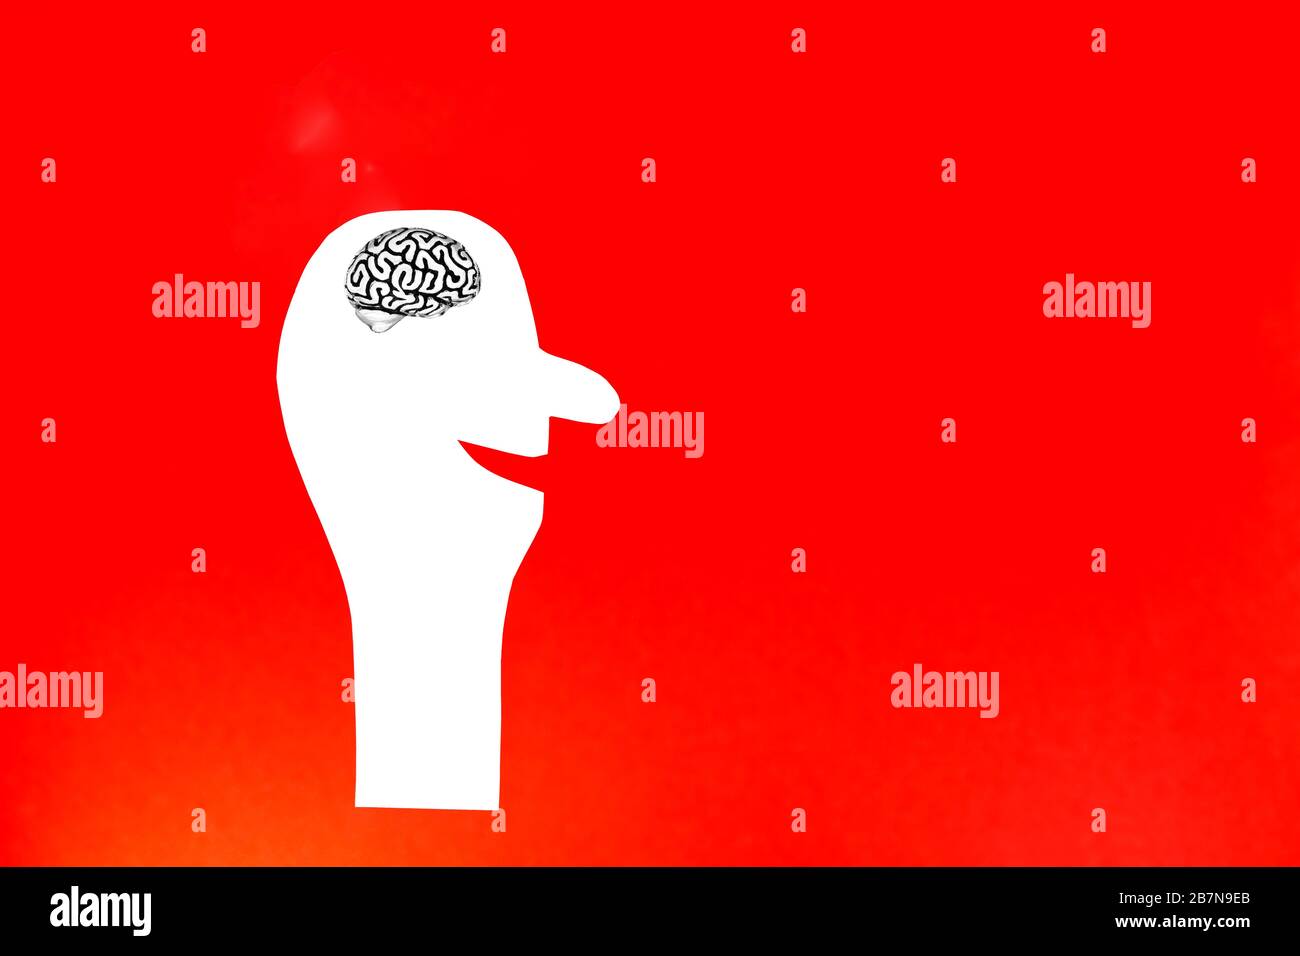 Silhouette bianca di una persona sorridente tagliata di carta contenente un modello metallico di un cervello umano con pieghe e un cervelletto all'interno della testa. Foto Stock